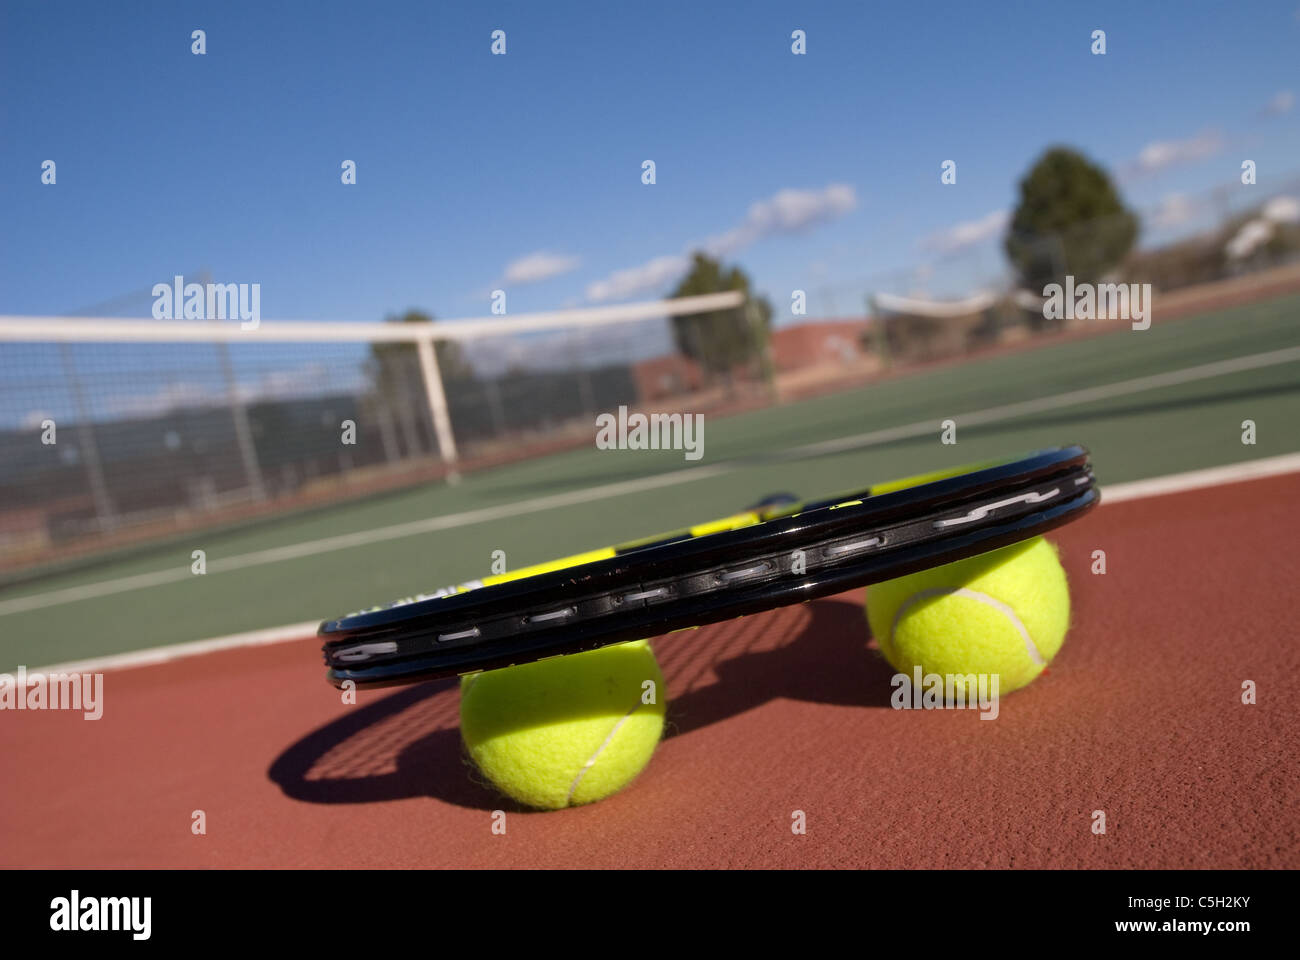 Une image illustrant le concept de tennis, y compris la Cour, la raquette, balles et bleu à l'extérieur. Banque D'Images